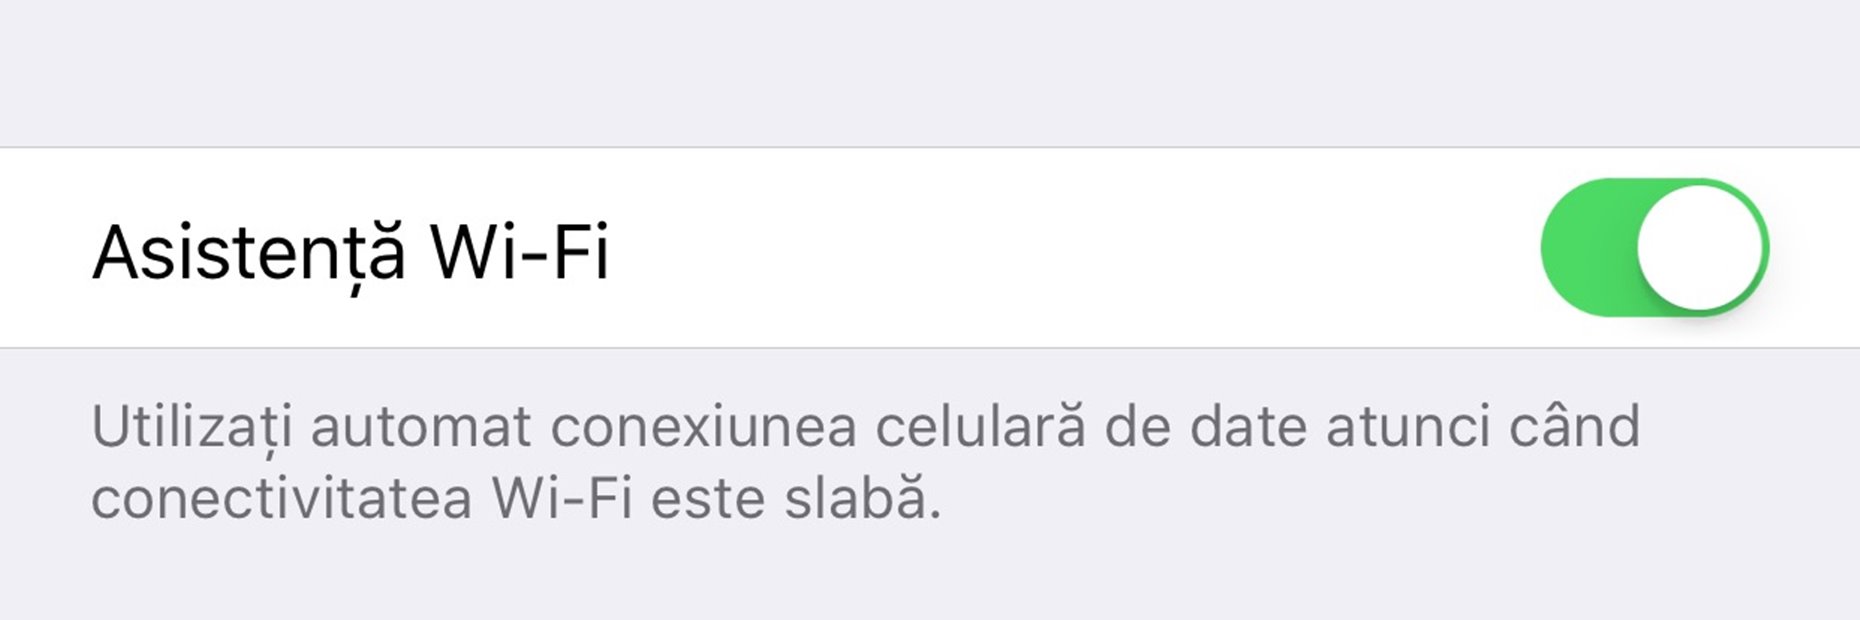 Obsługa Wi-Fi w iOS 9